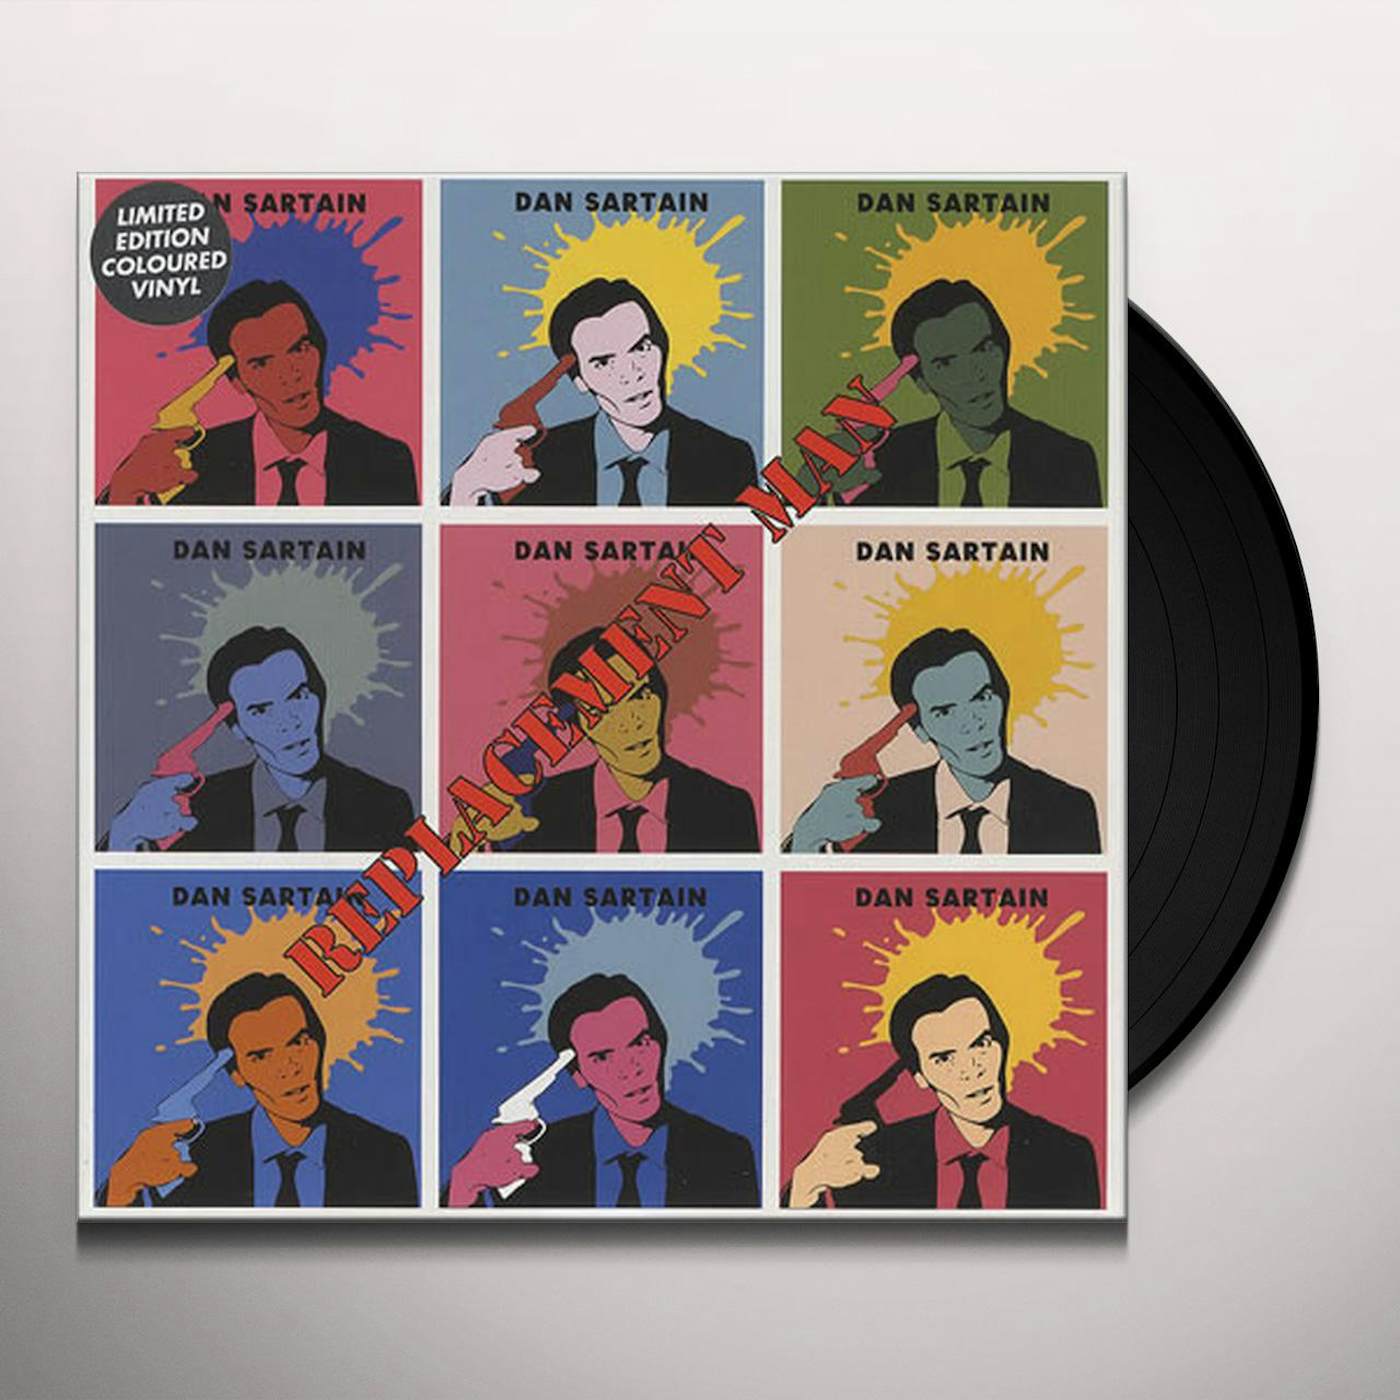 Dan Sartain Replacement Man Vinyl Record